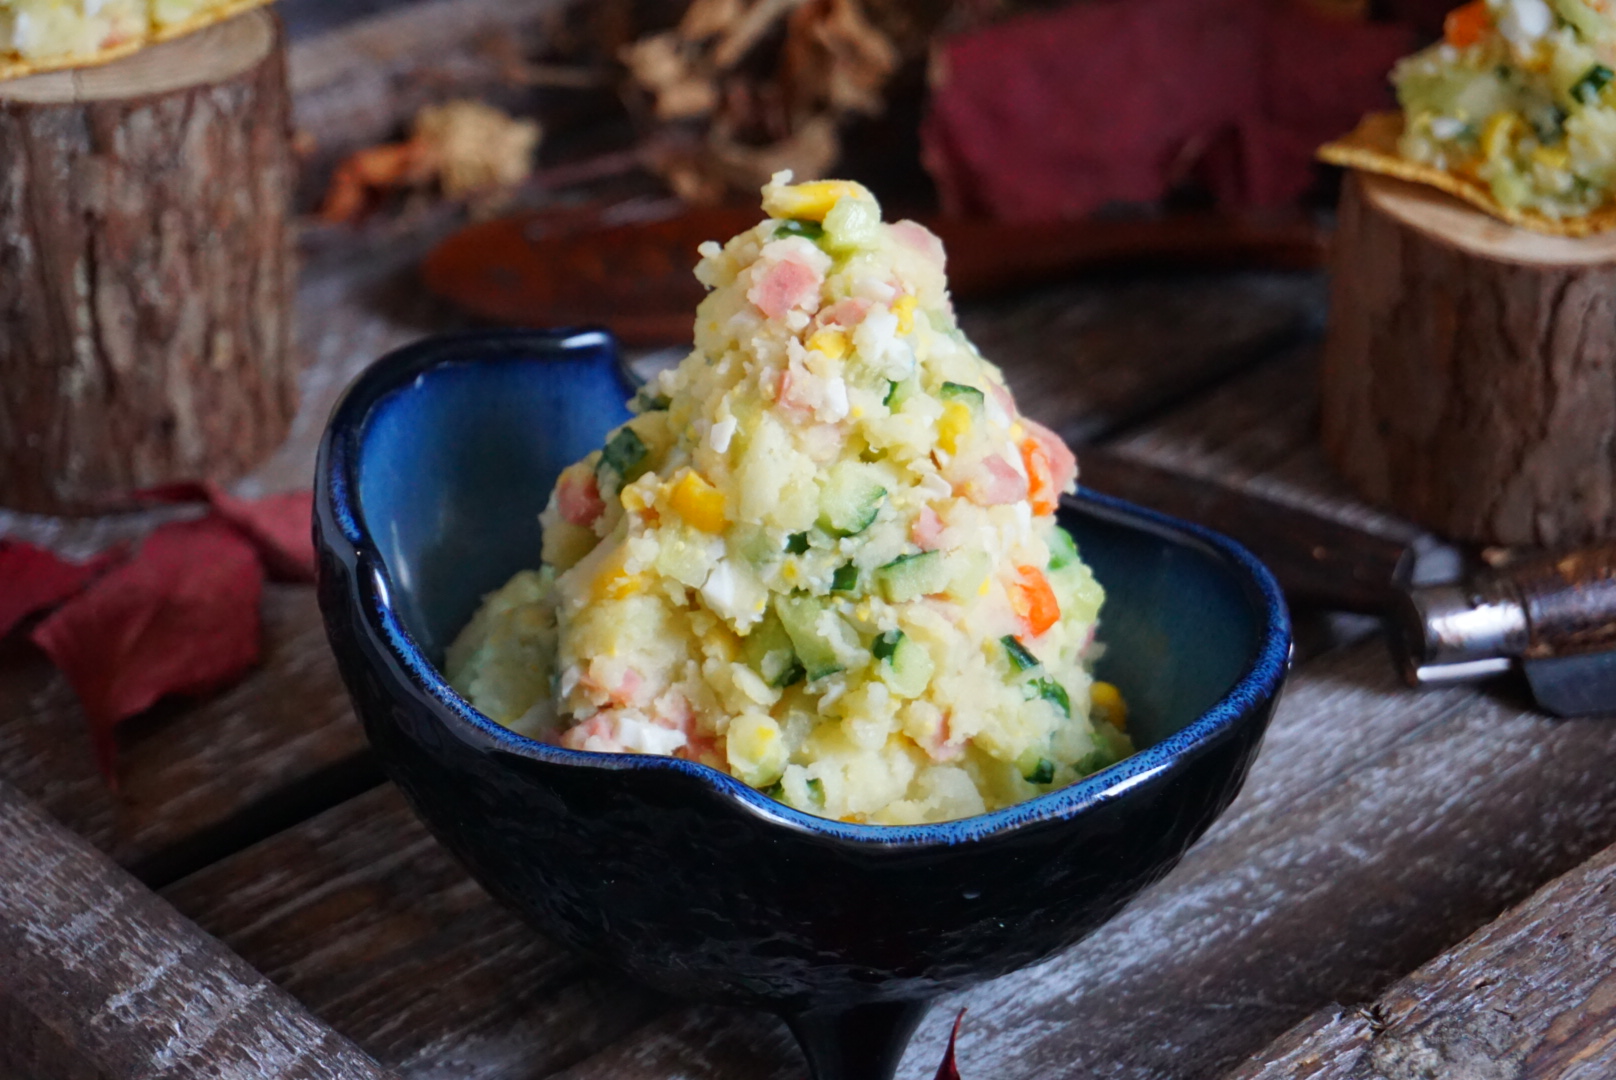 1分钟学会简单又好吃的日式土豆泥沙拉